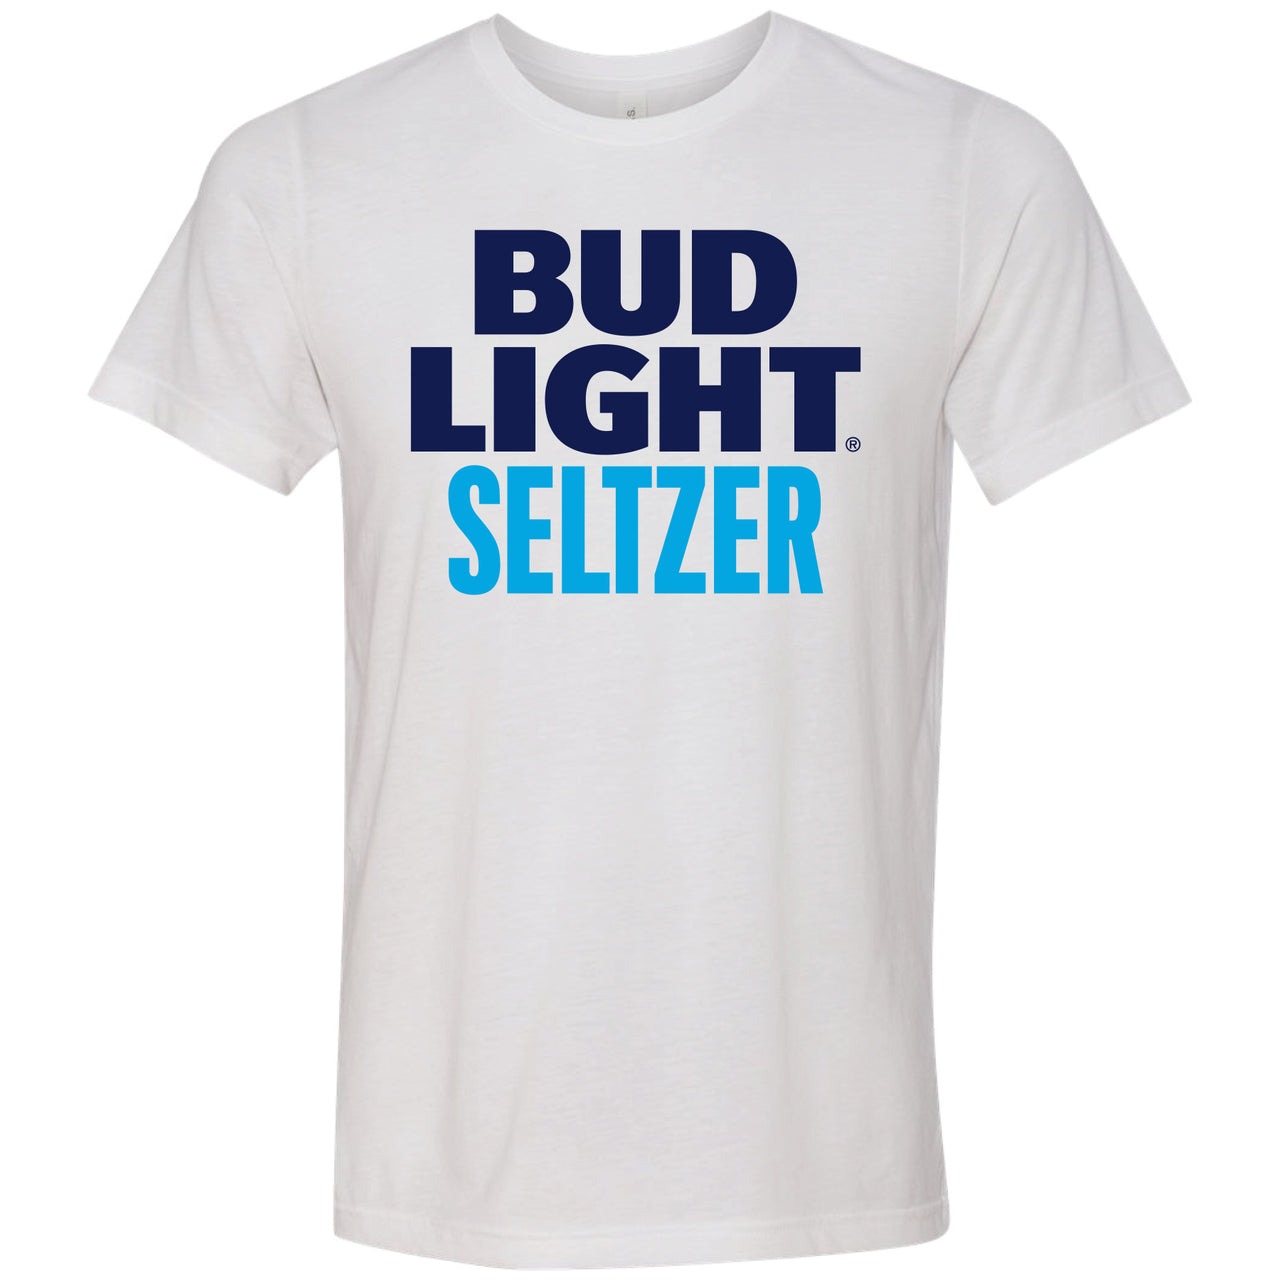 Bud Light Seltzer Logo T-Shirt